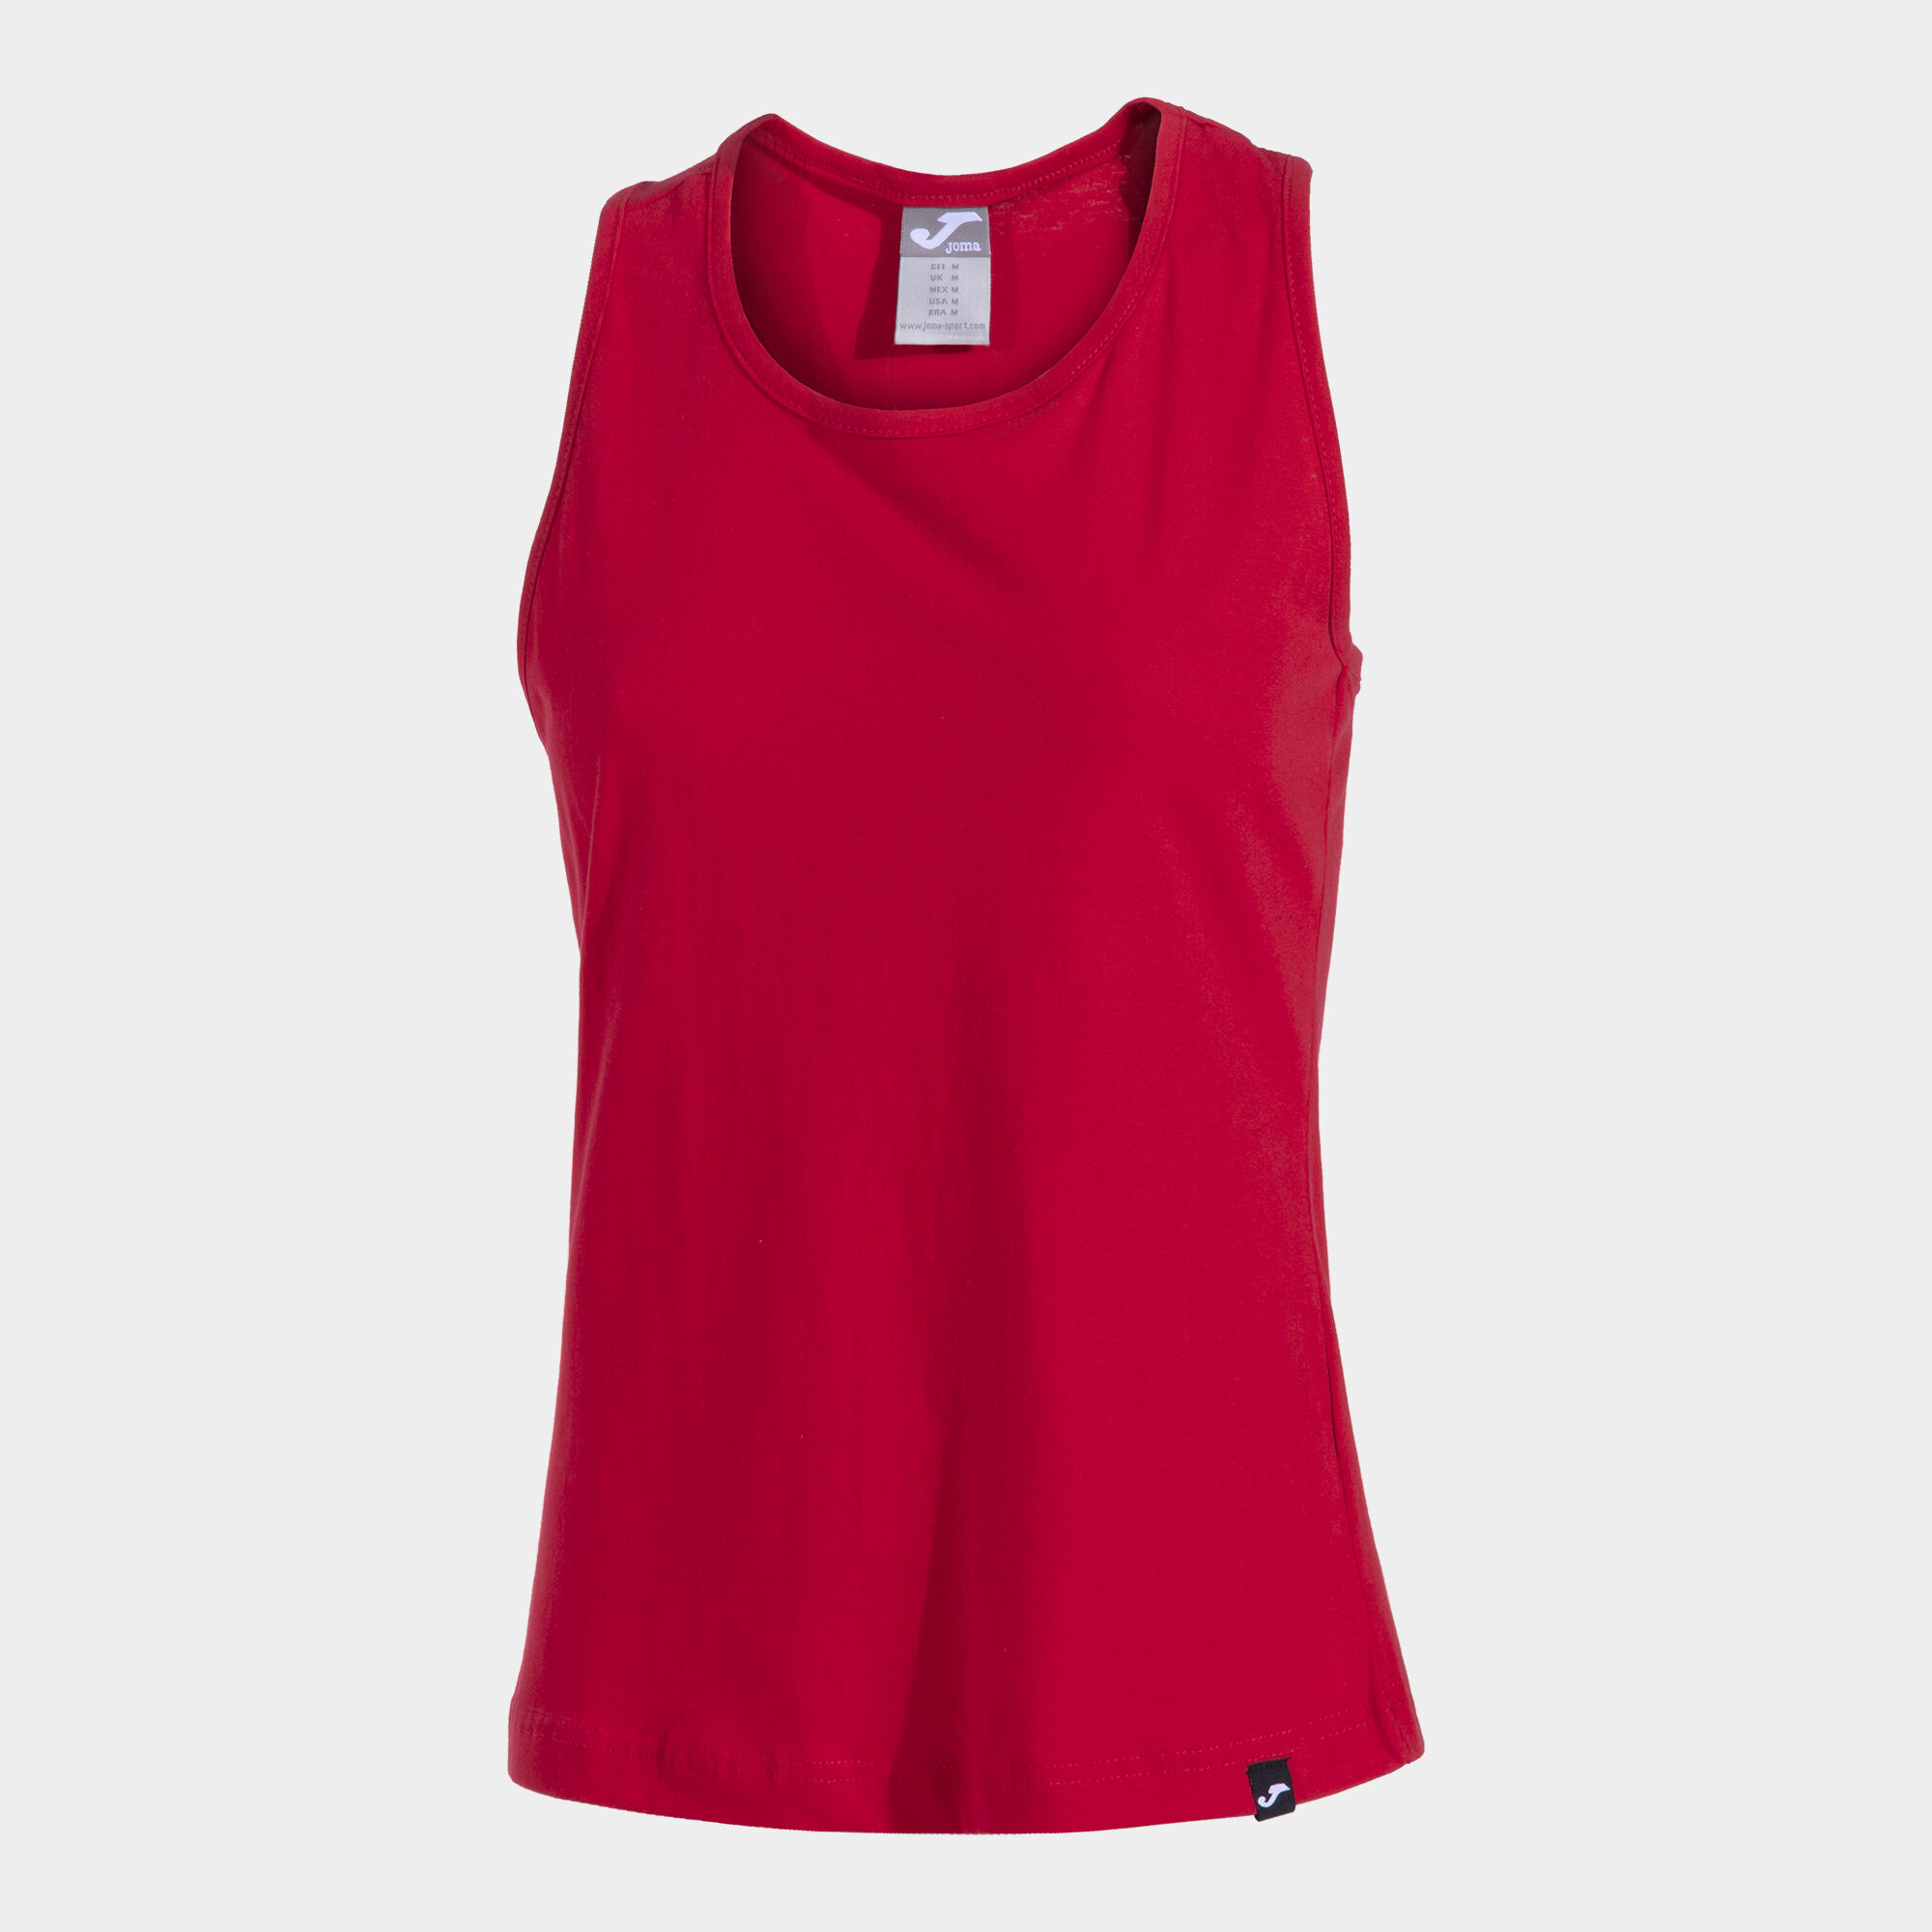 Camiseta tirantes mujer Oasis rojo